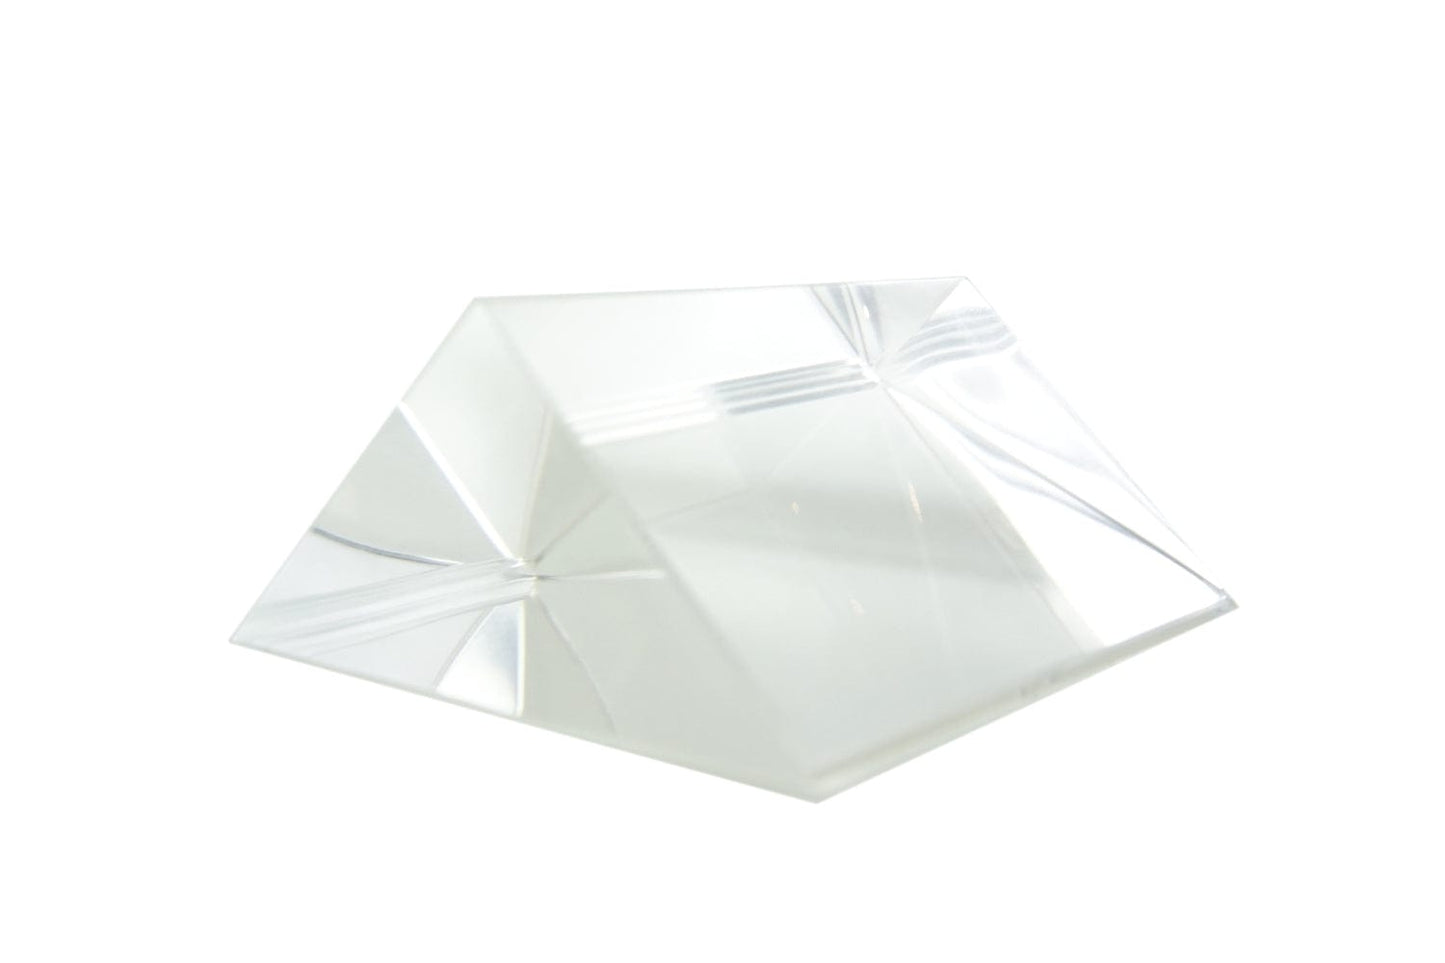 Arbor Scientific Right Angle Glass Prism